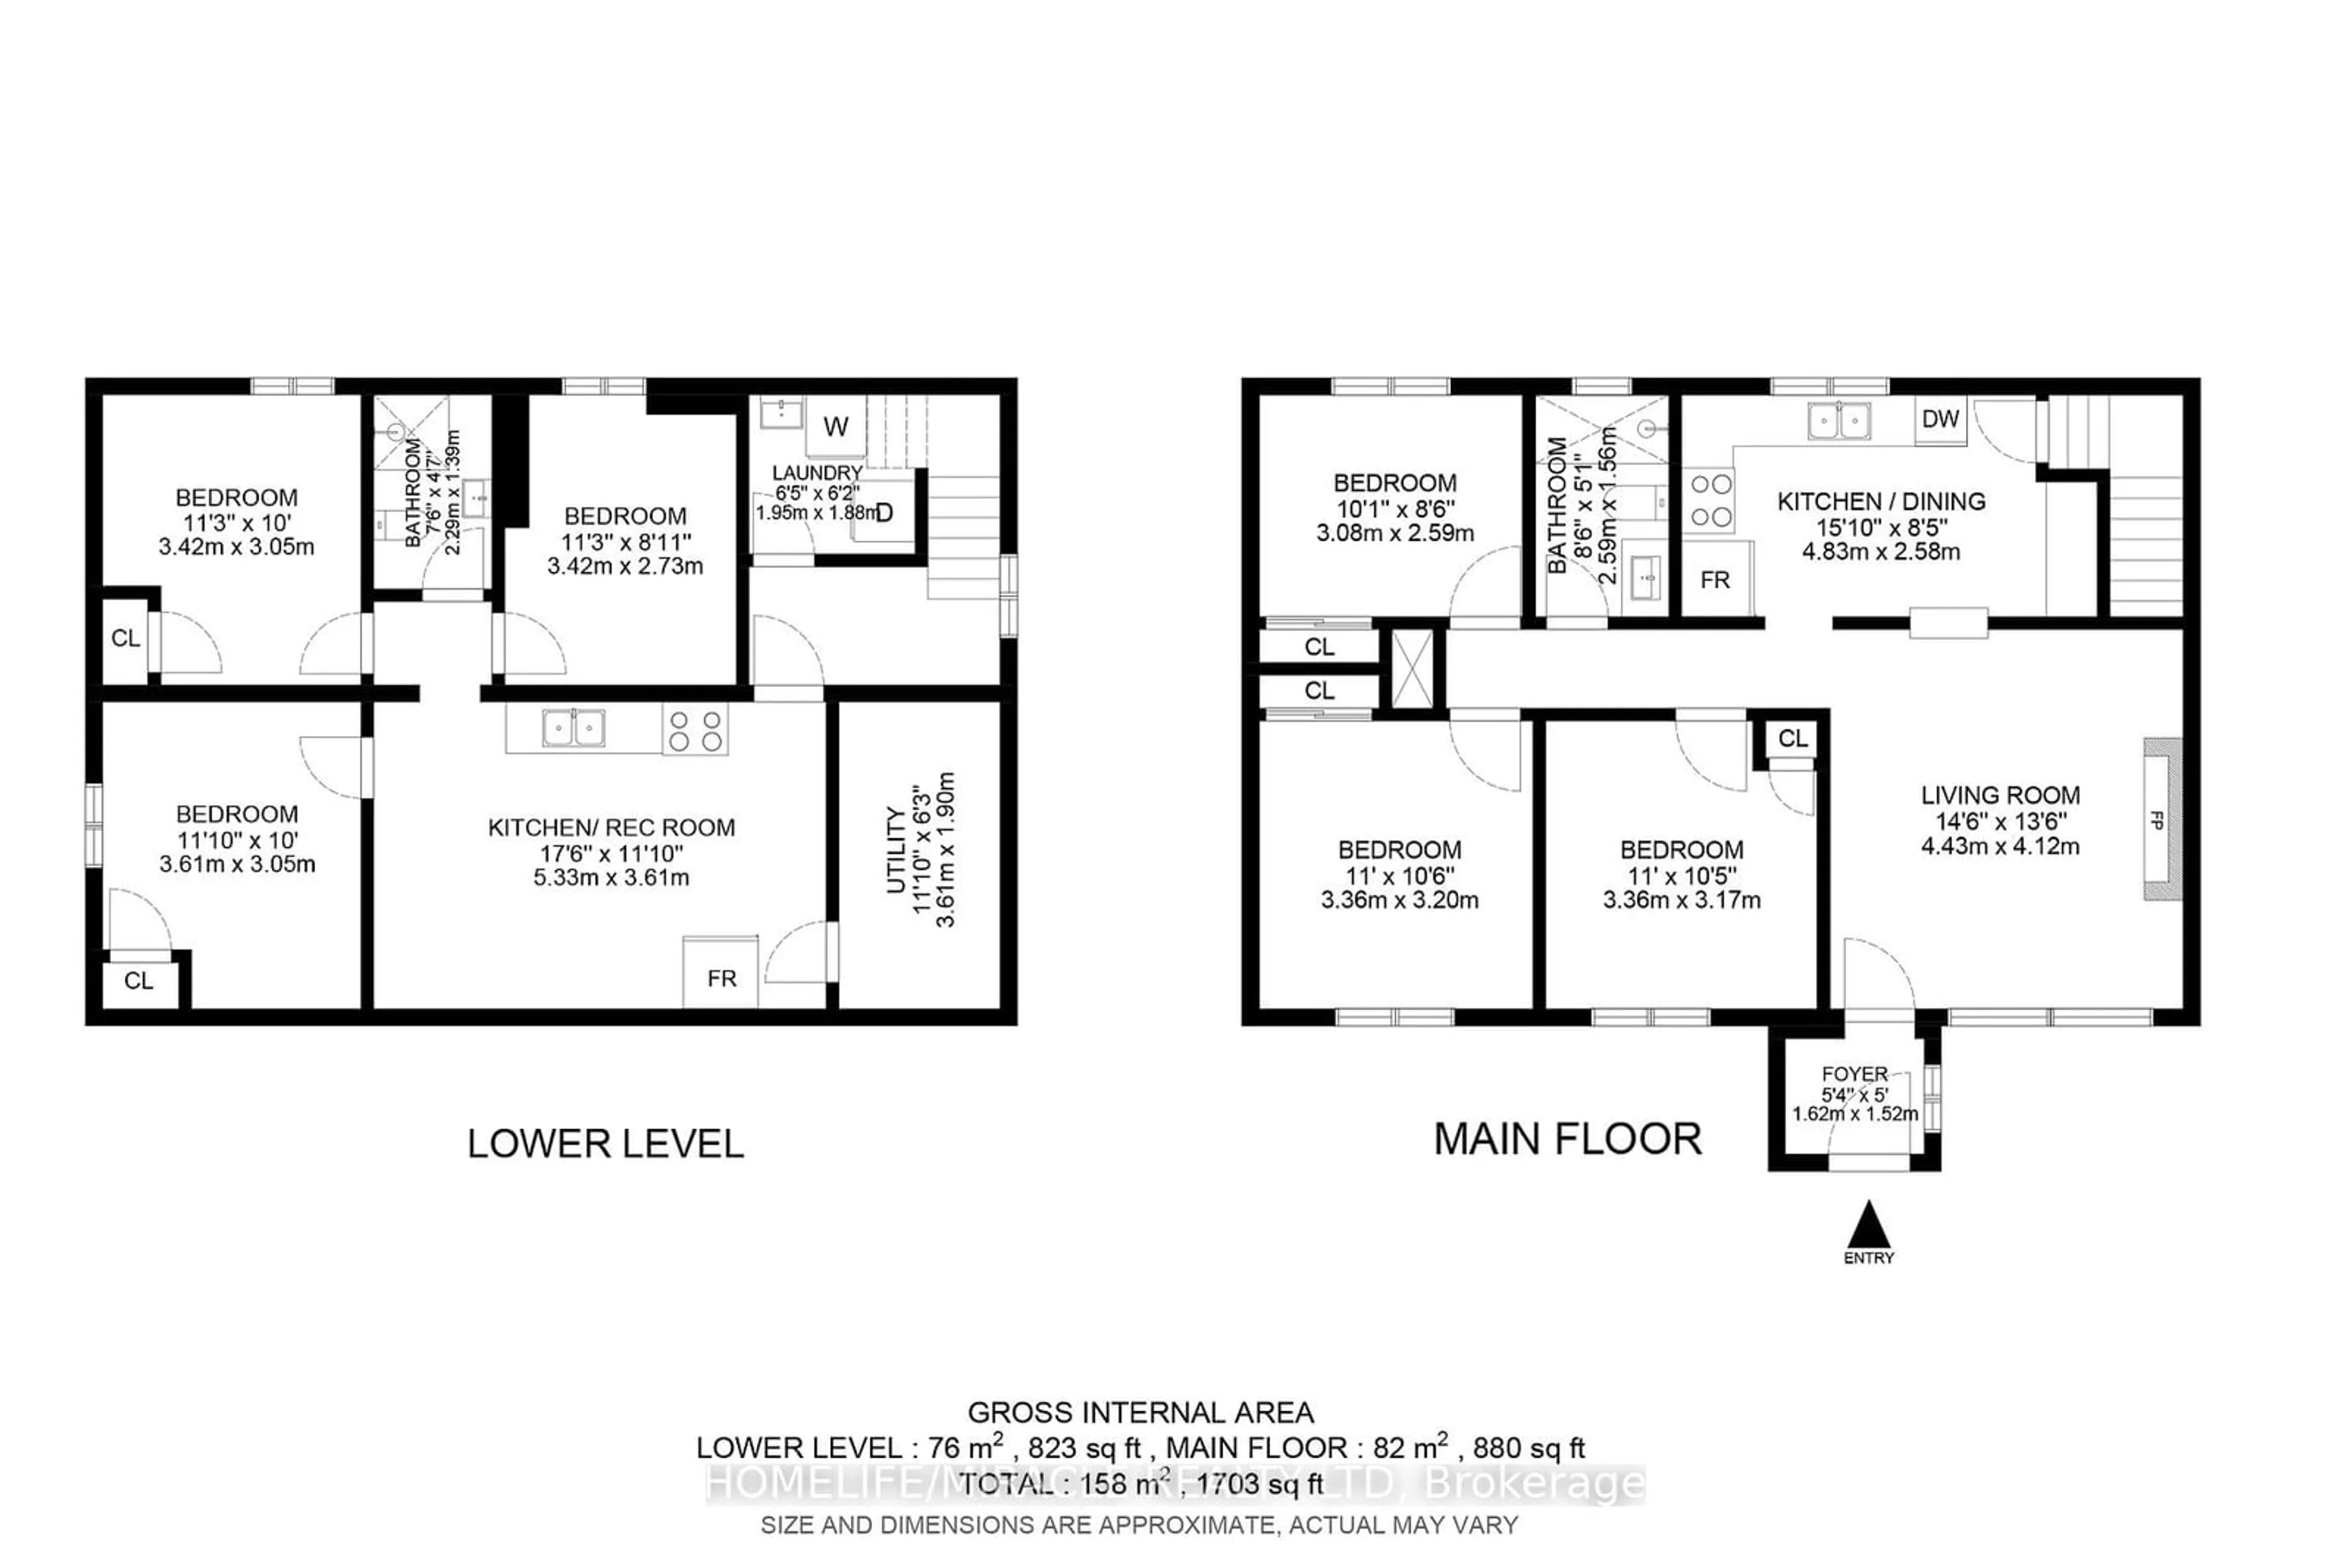 Floor plan for 121 LAURENTIAN Dr, London Ontario N5W 1P1